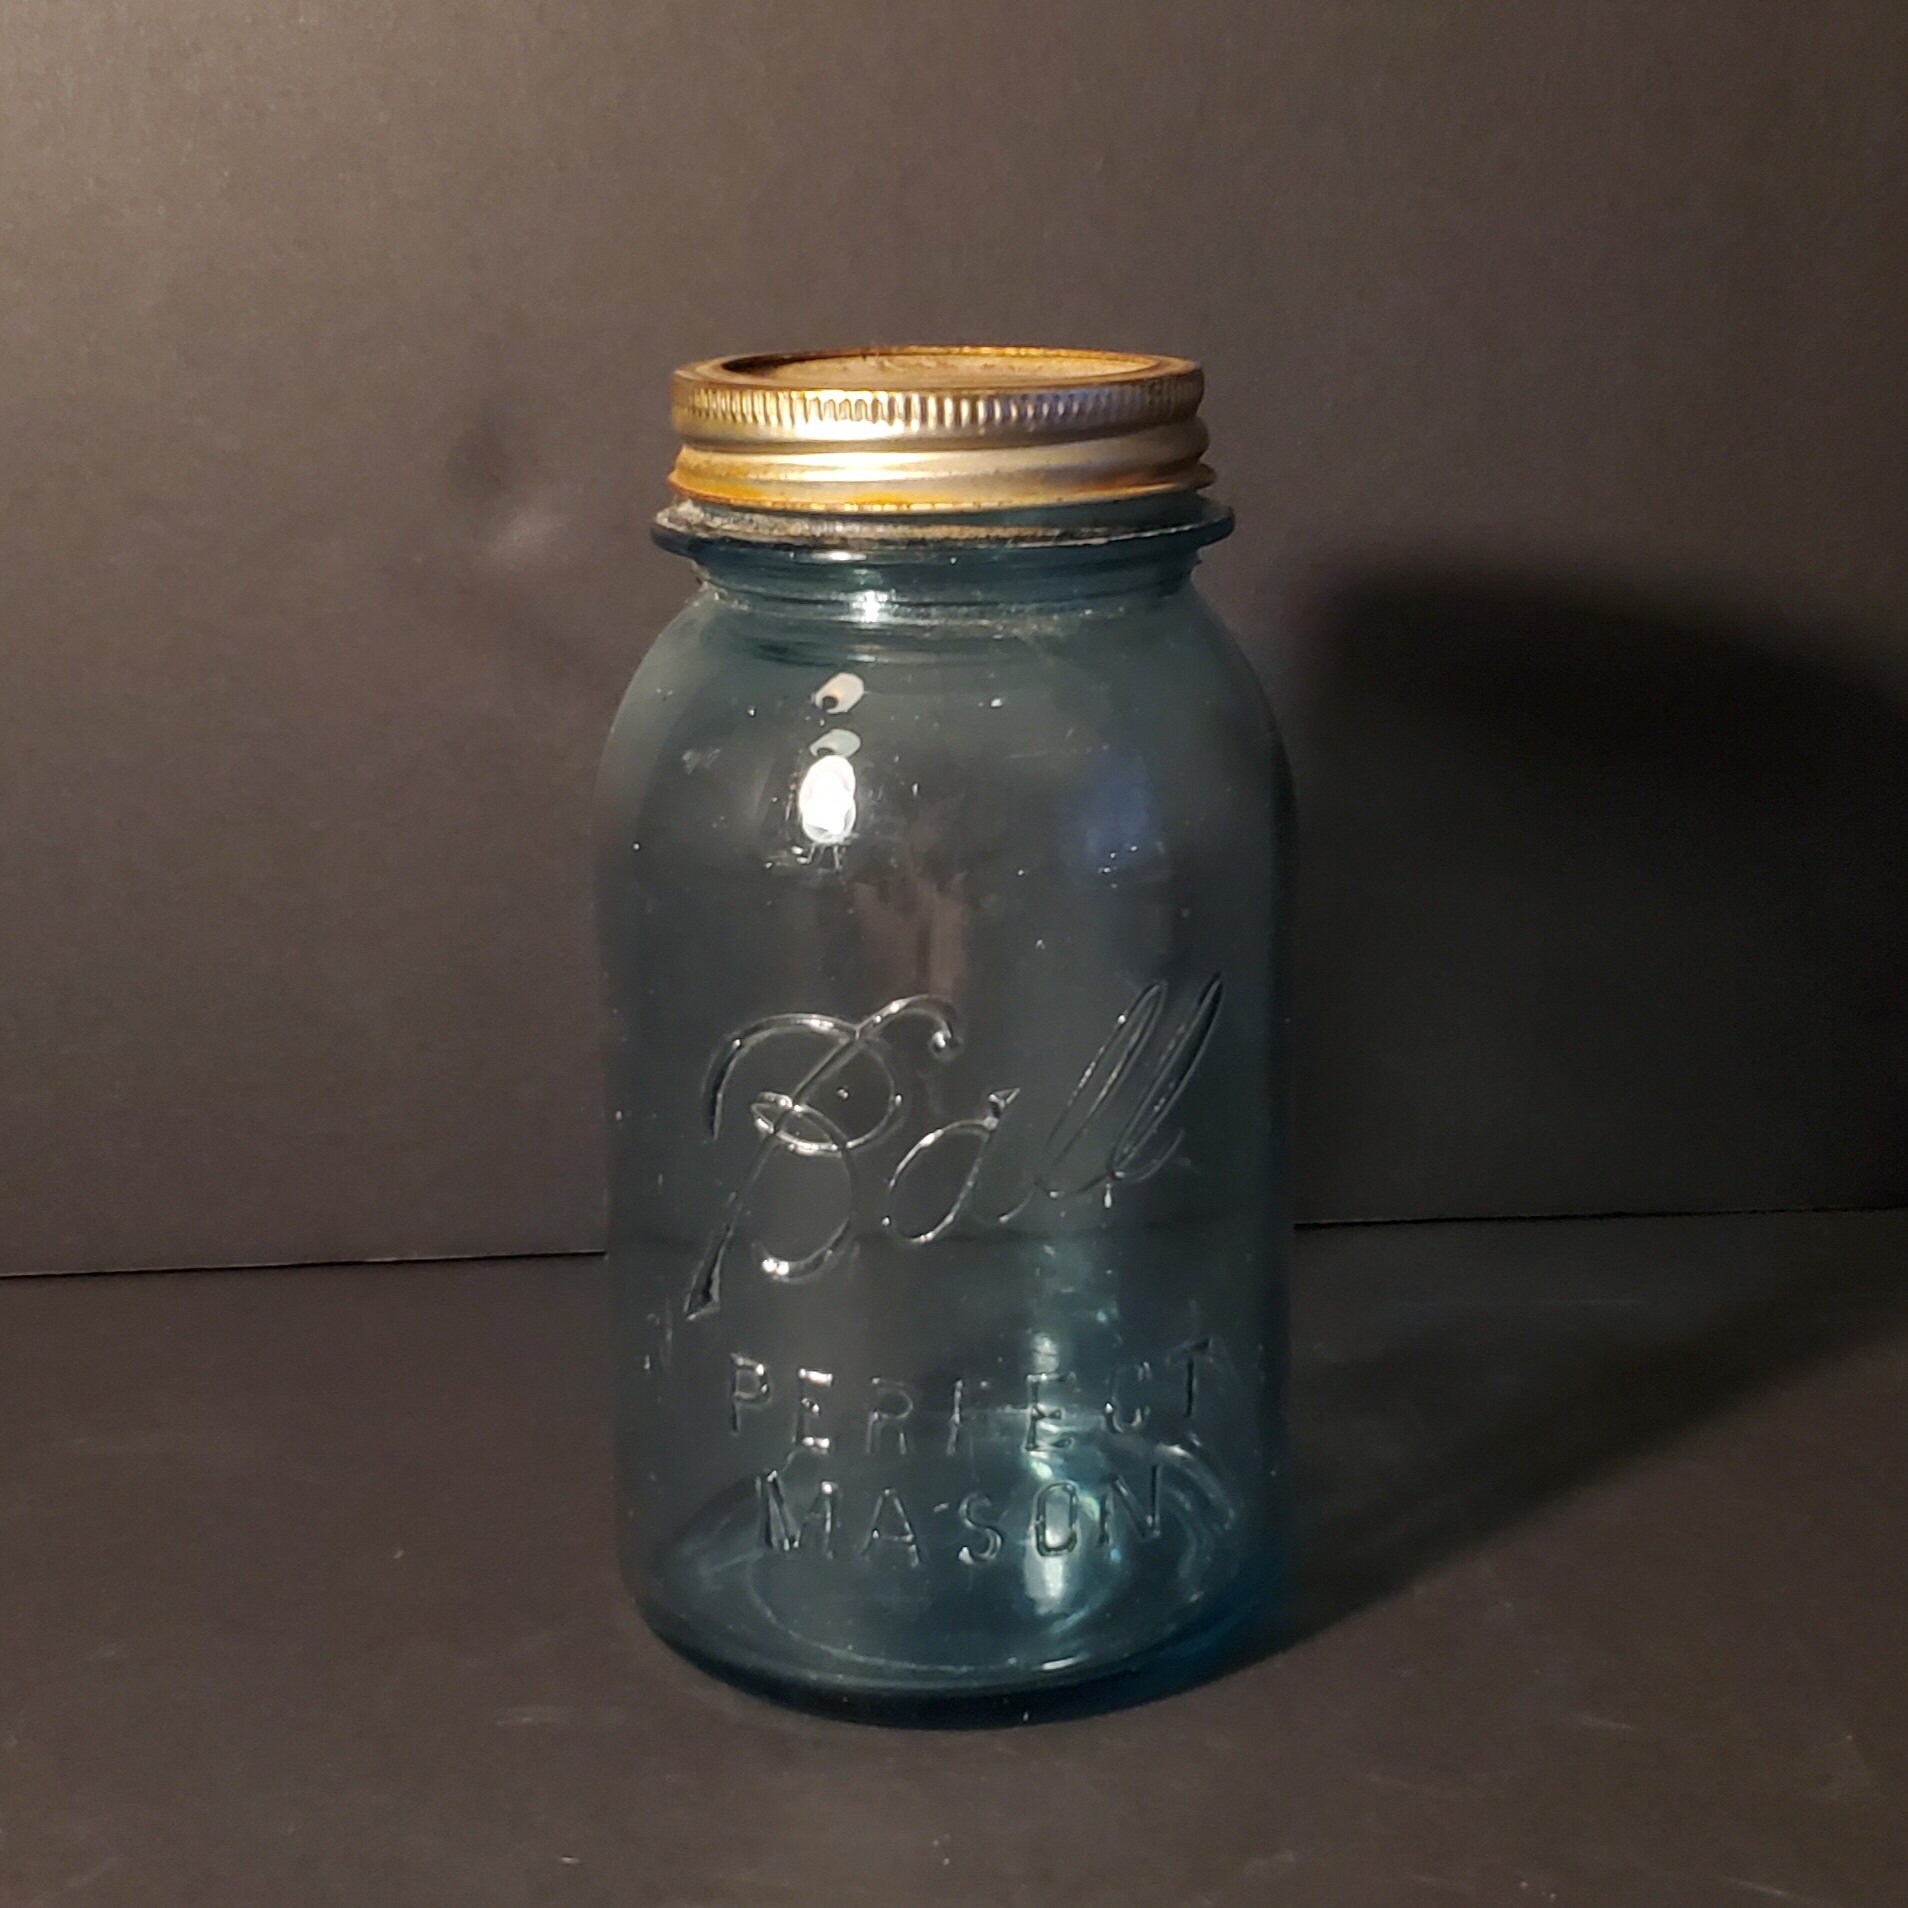 ORIGINAL TRY OUT PACK JARS – Pearl Jars